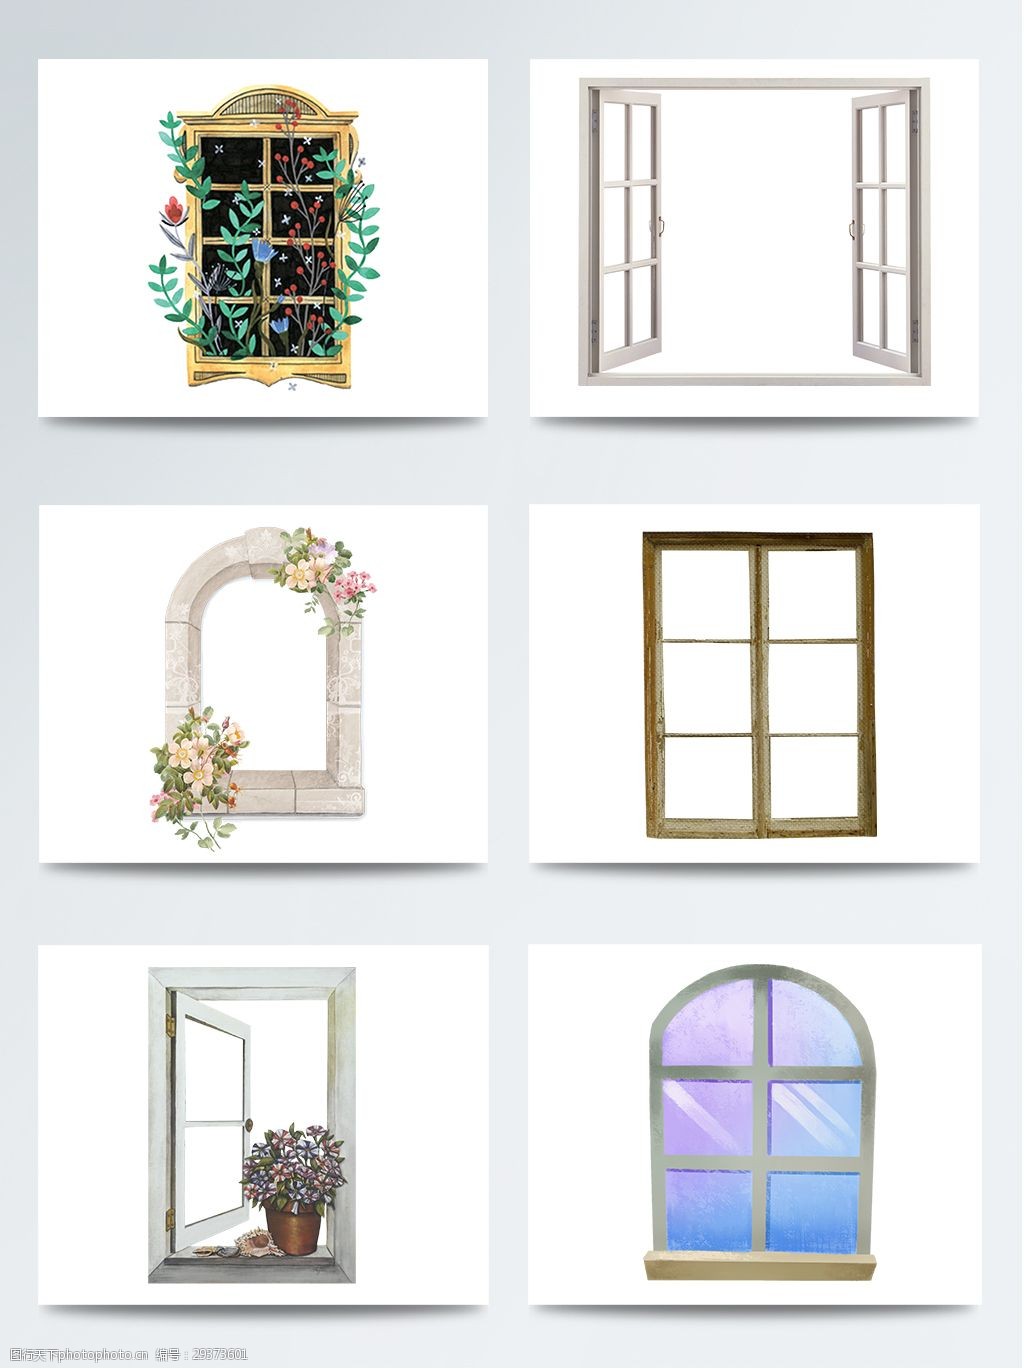 关键词:手绘窗户简约欧美小清新 白色 窗户 简约 欧美 手绘 素材 唯美